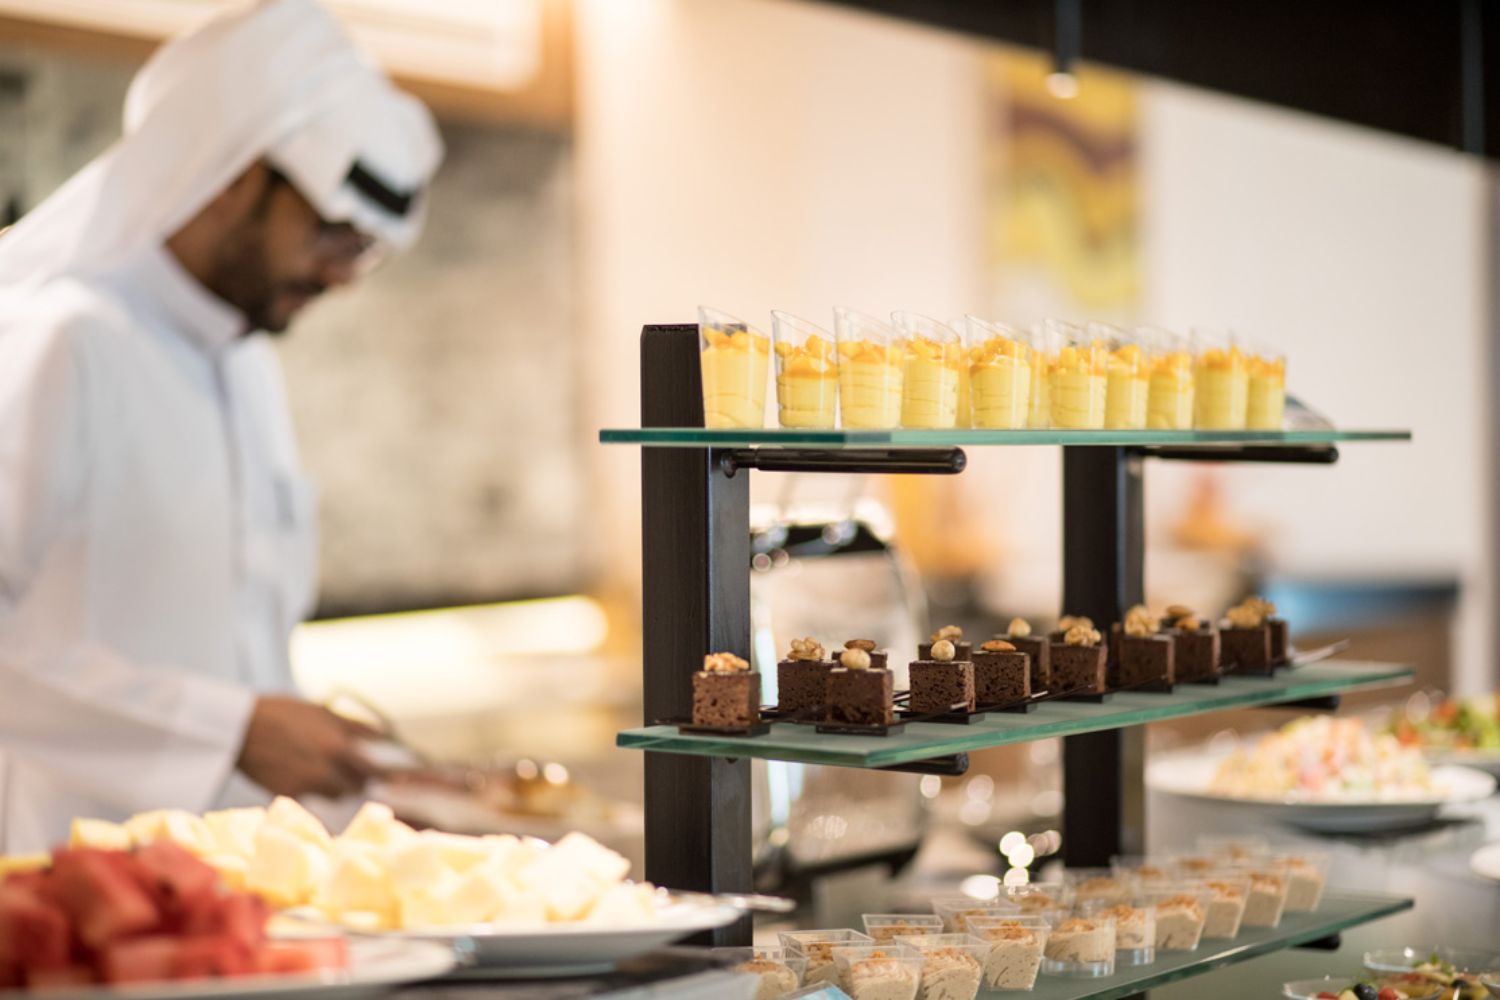 Byblos Hospitality Dubai Restaurants, Cafe & Bars